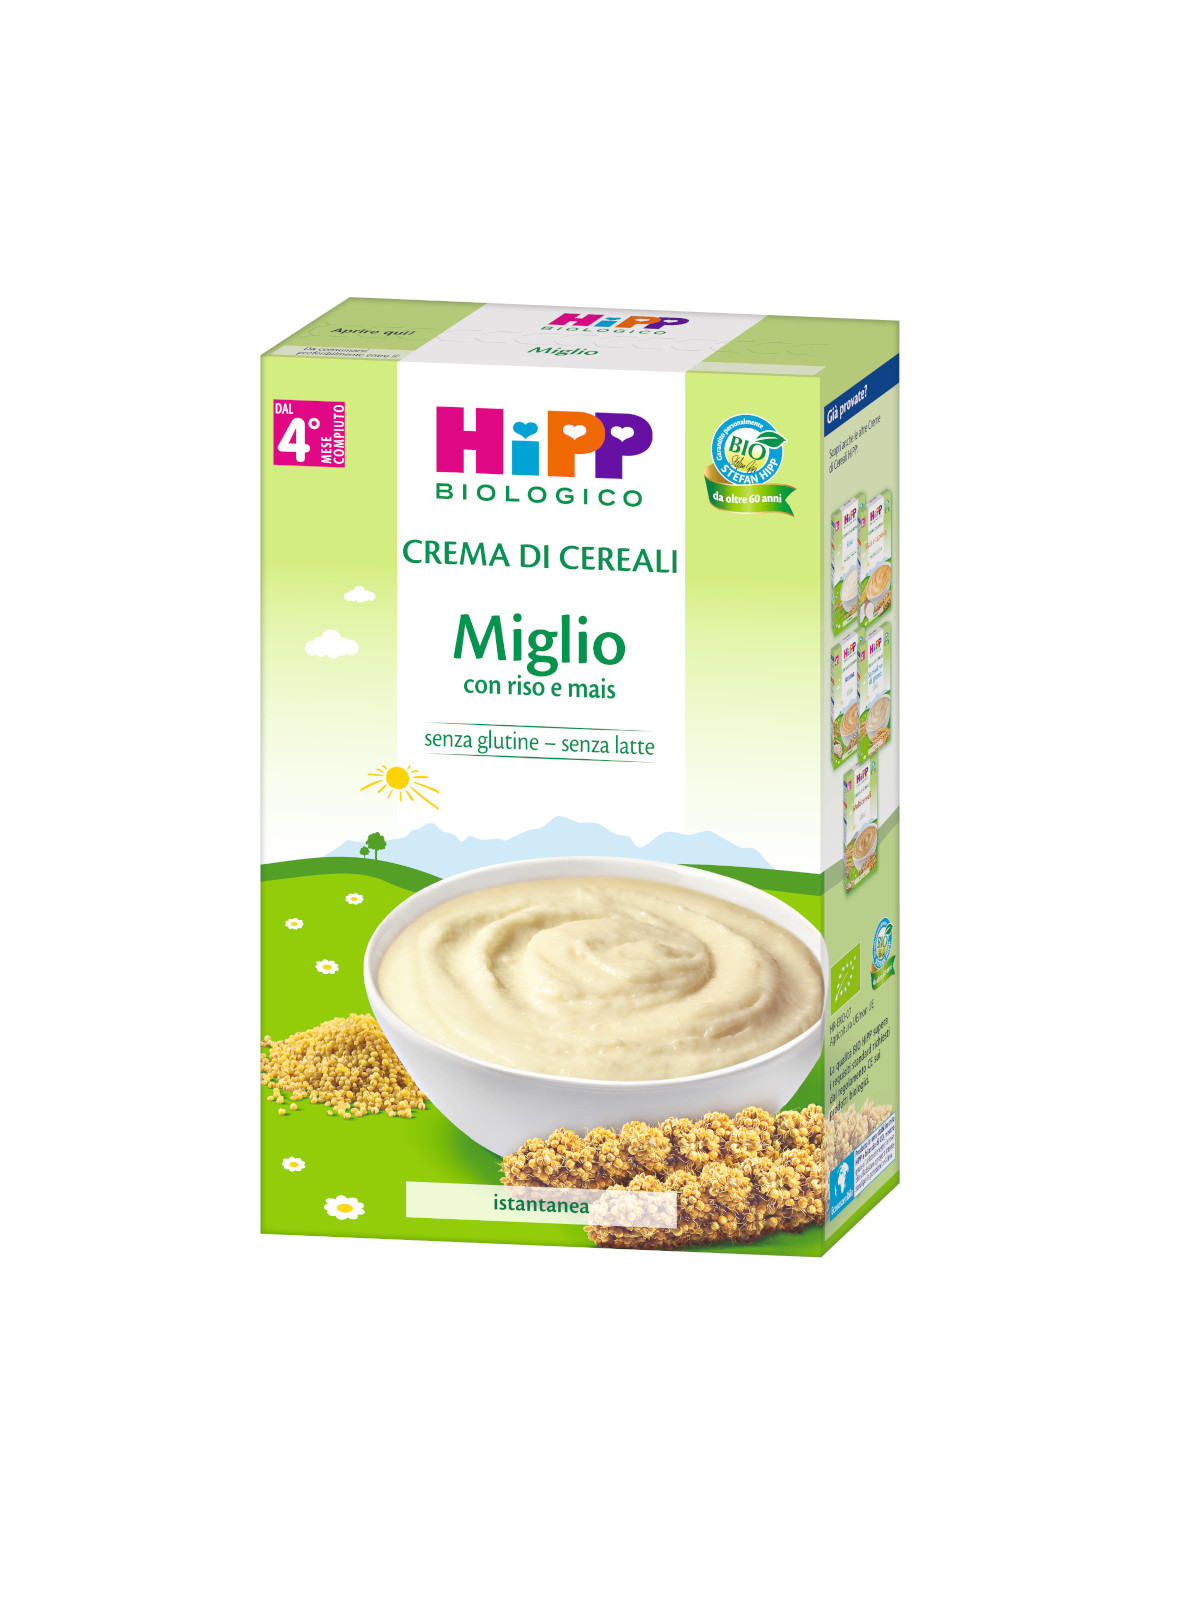 Crema di cereali miglio 200g - Hipp